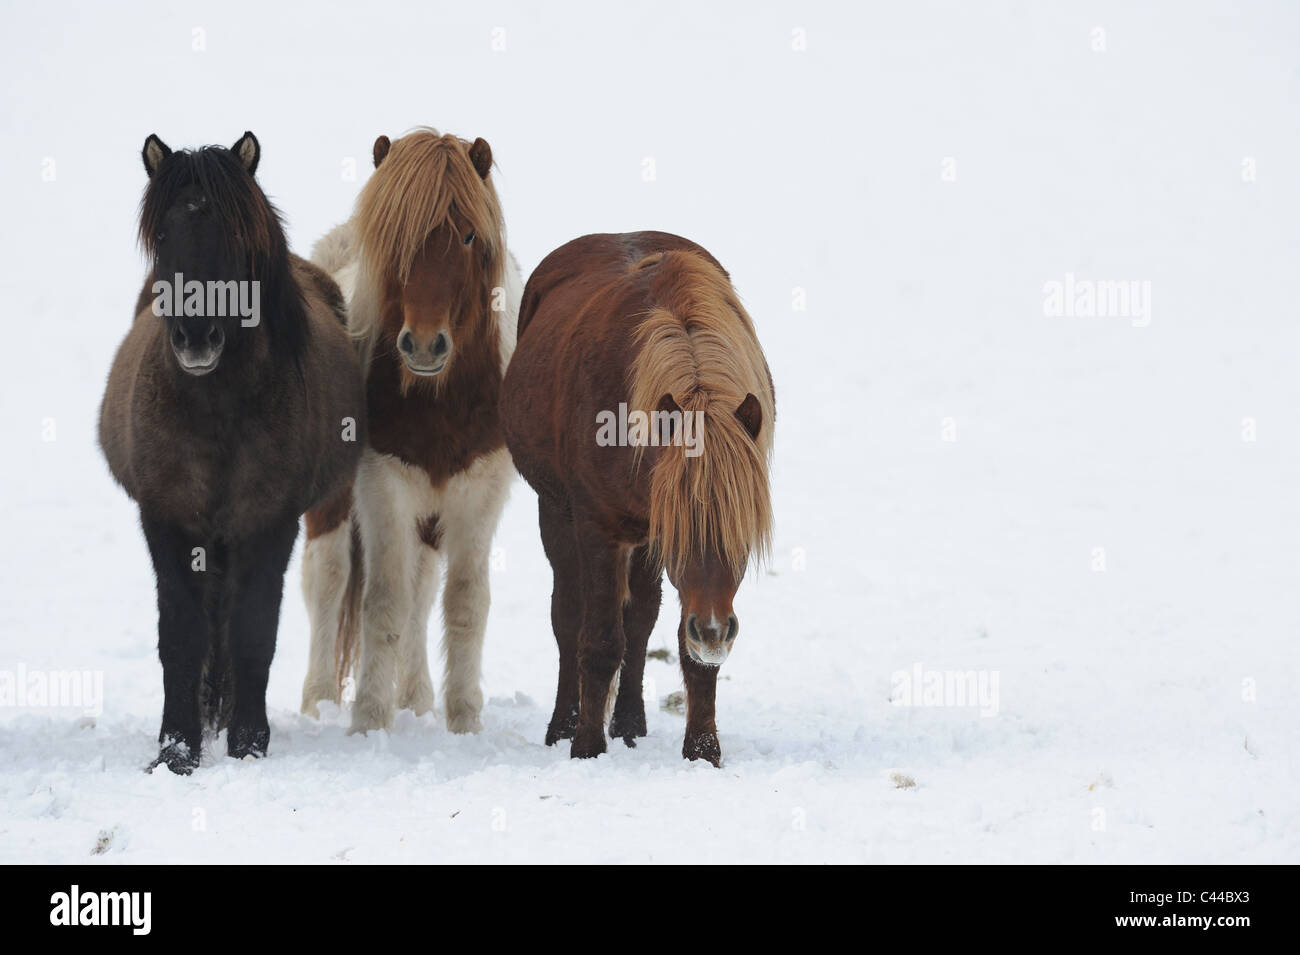 Isländische Pferd (Equus Ferus Caballus). Drei Personen auf einer schneebedeckten Wiese stehen. Stockfoto